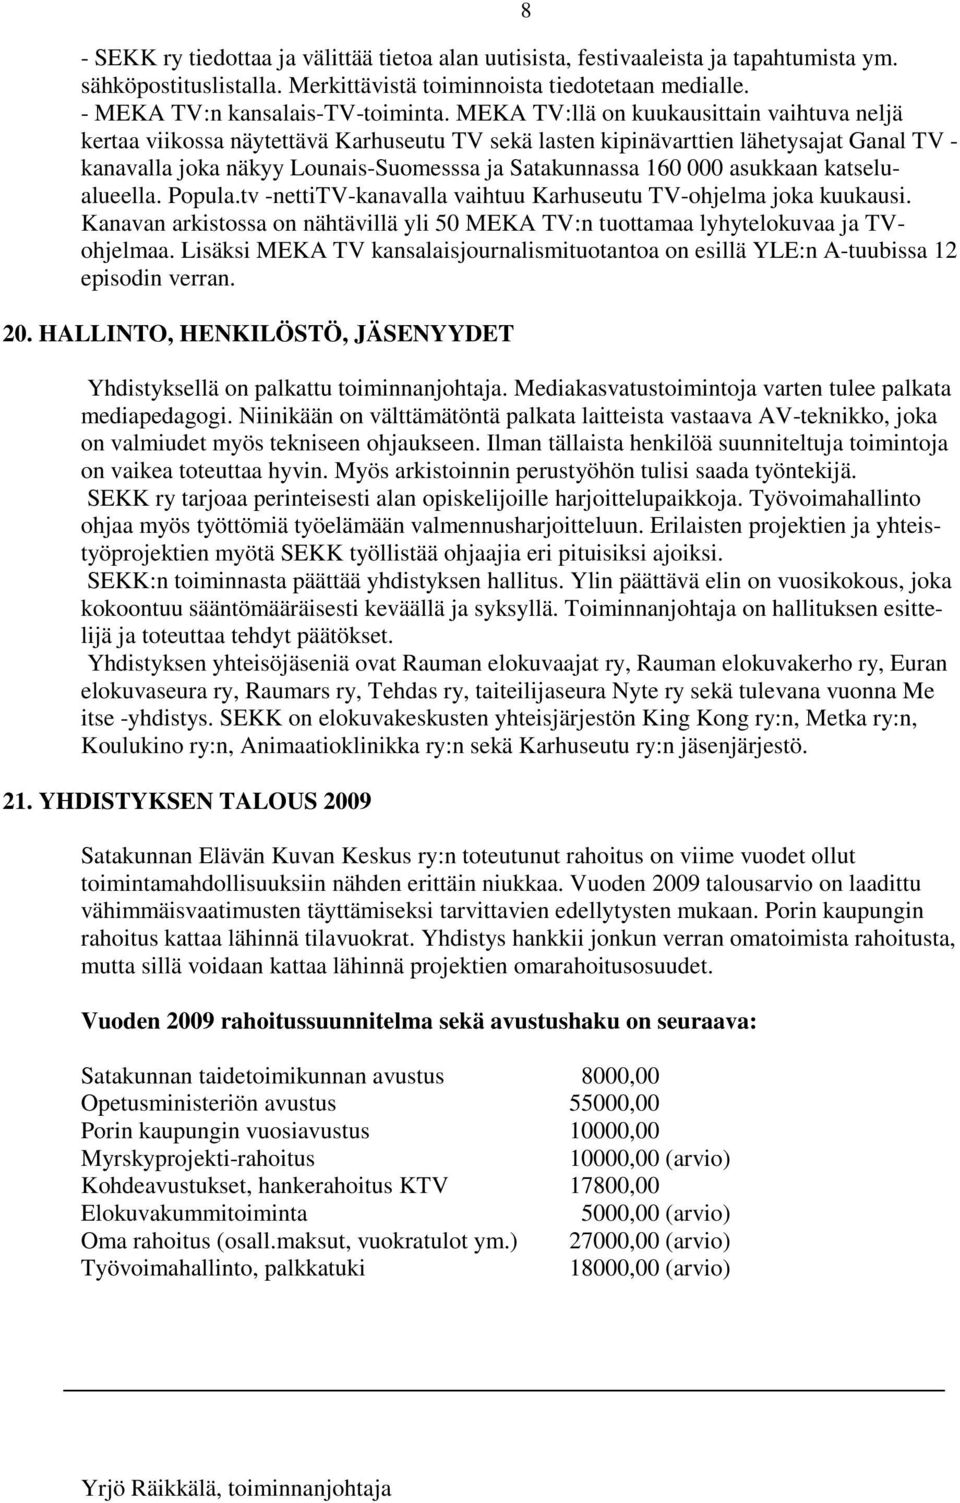 asukkaan katselualueella. Popula.tv -nettitv-kanavalla vaihtuu Karhuseutu TV-ohjelma joka kuukausi. Kanavan arkistossa on nähtävillä yli 50 MEKA TV:n tuottamaa lyhytelokuvaa ja TVohjelmaa.